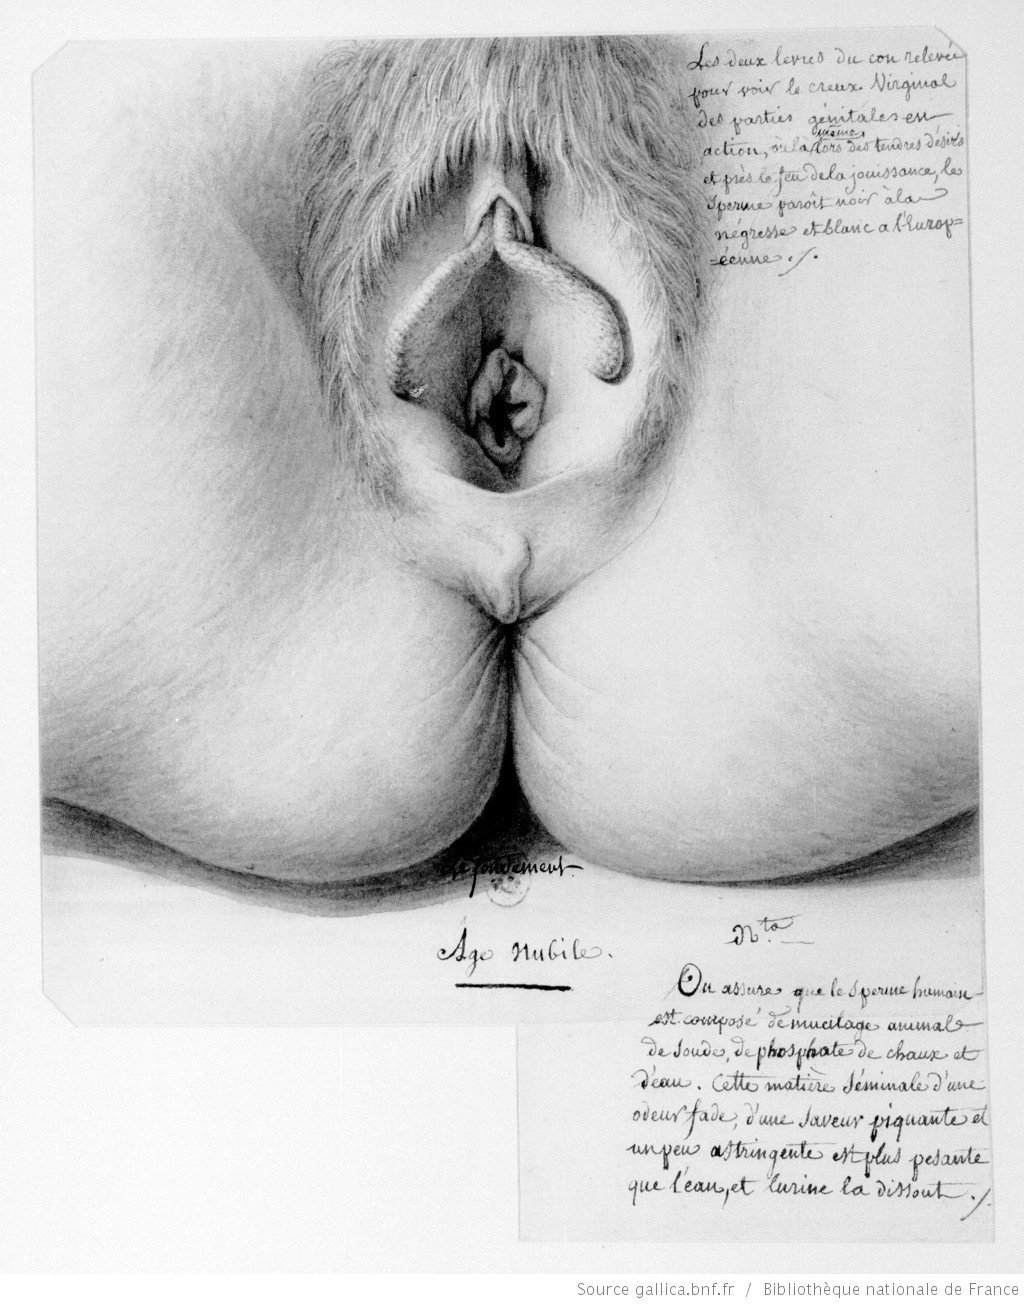 Жан-Жак Лекё Чувственные зарисовки ©Bibliothèque nationale de France https://bnf.fr